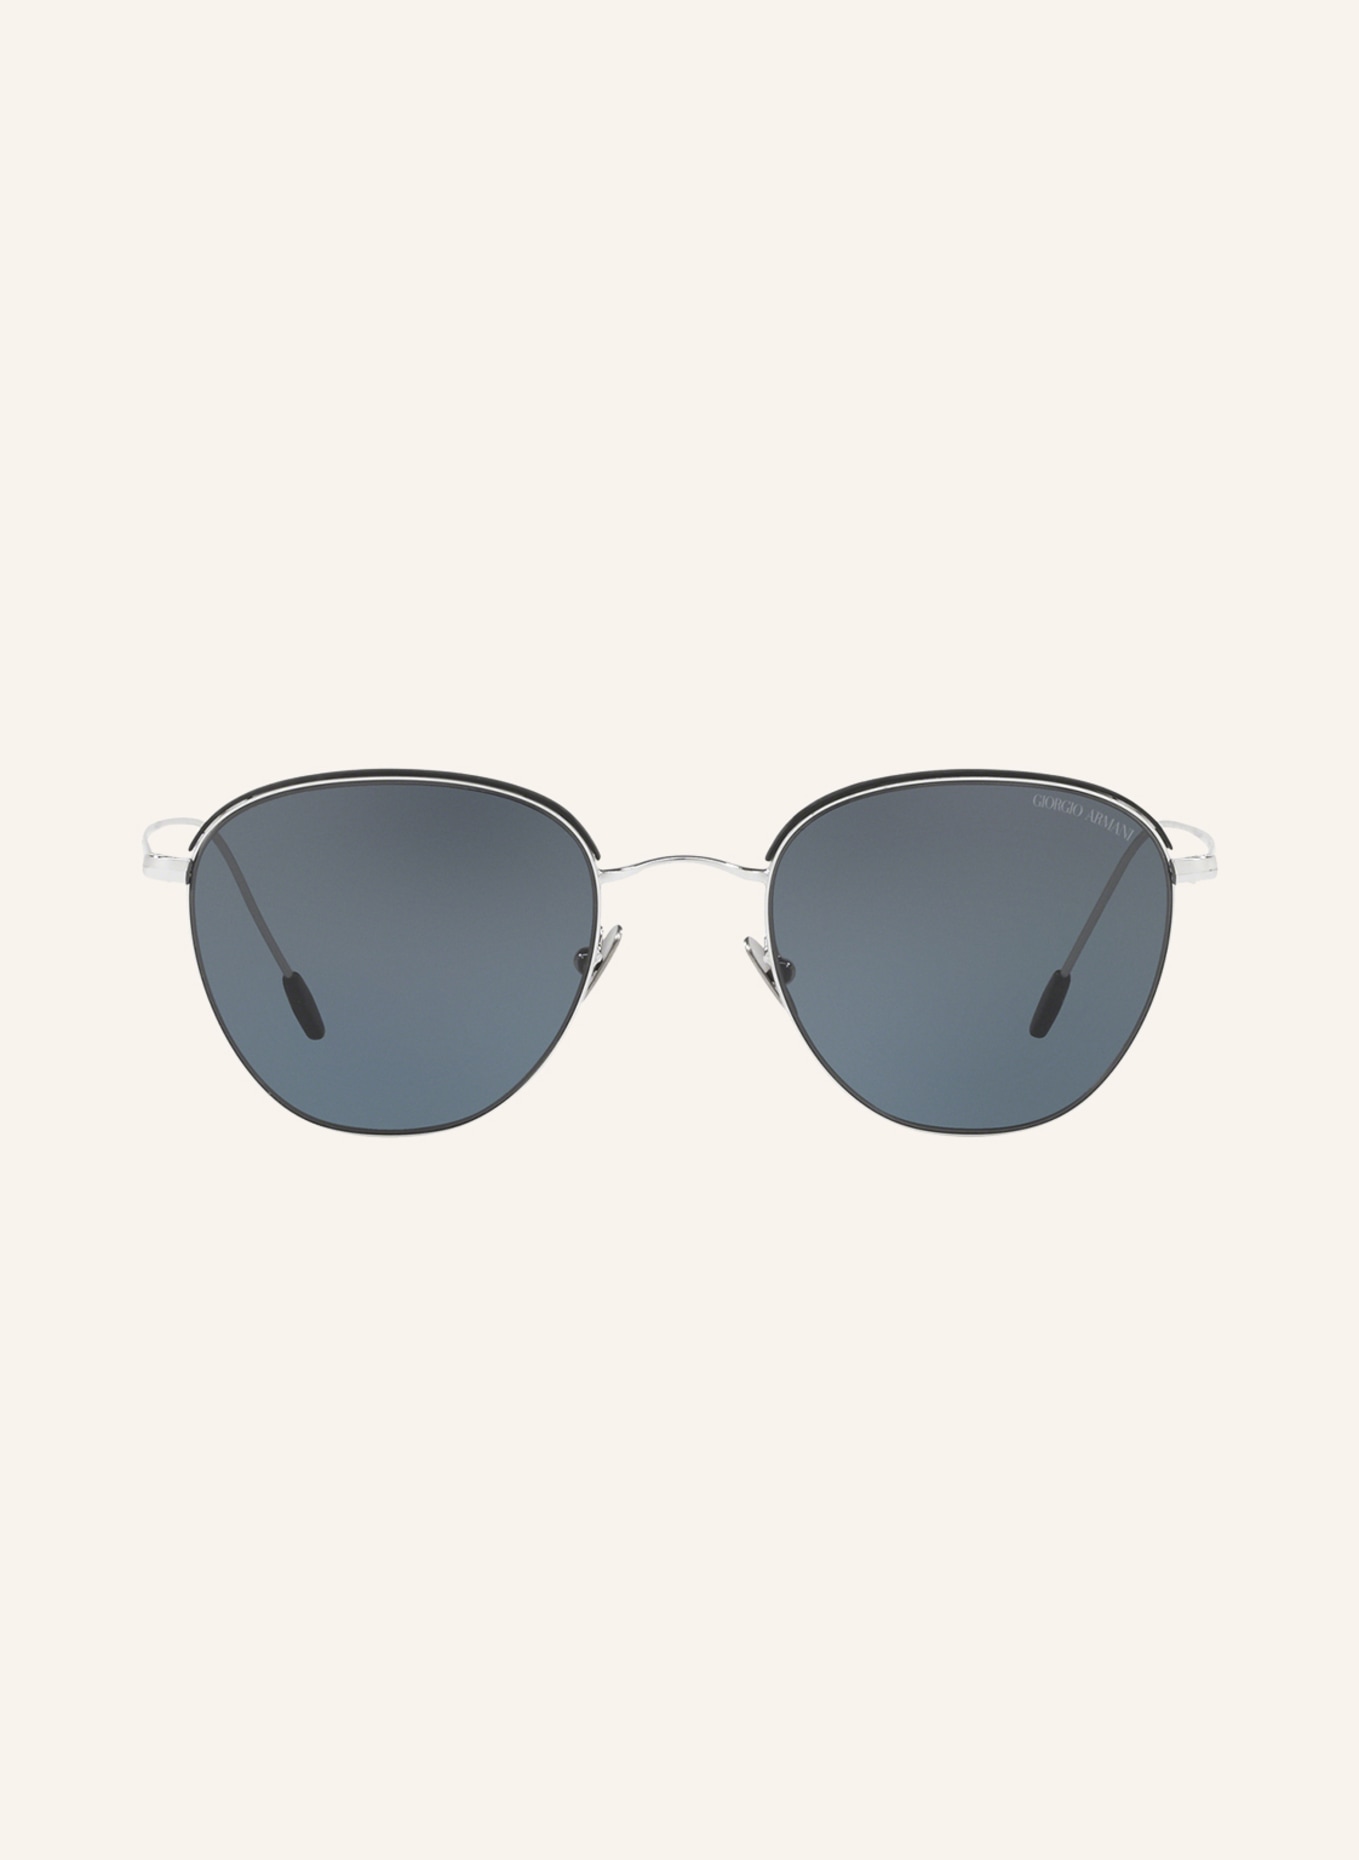 GIORGIO ARMANI Sunglasses AR6048 in 301587 - silver/dark gray